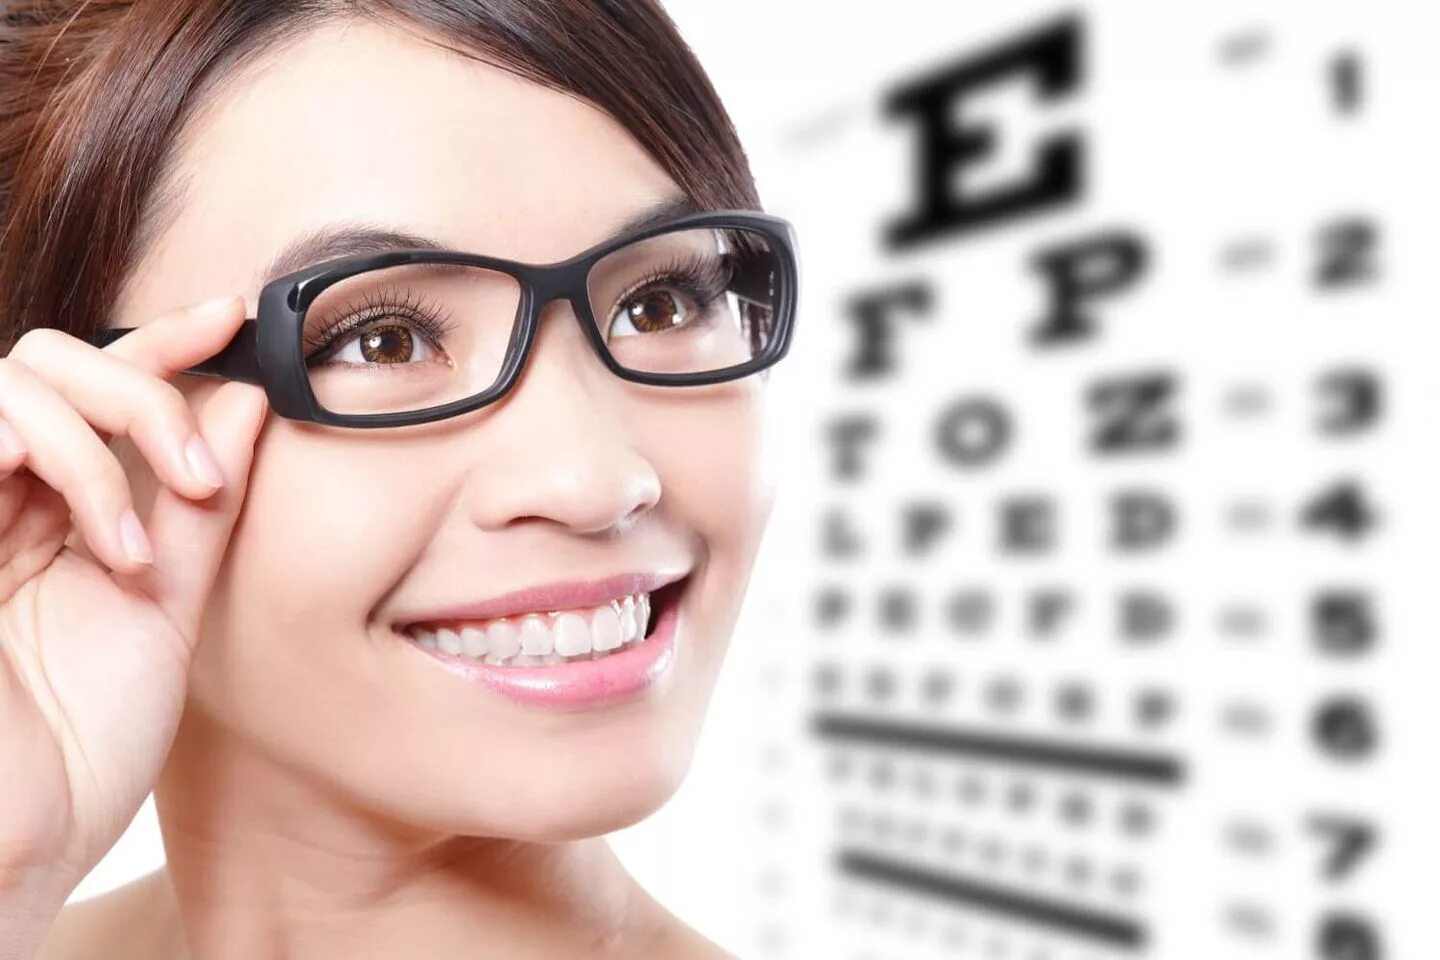 Зрение 3 какие очки. Оптика очки для зрения. Реклама очков для зрения. Девушка в очках для зрения. Очки для дальнозоркости.